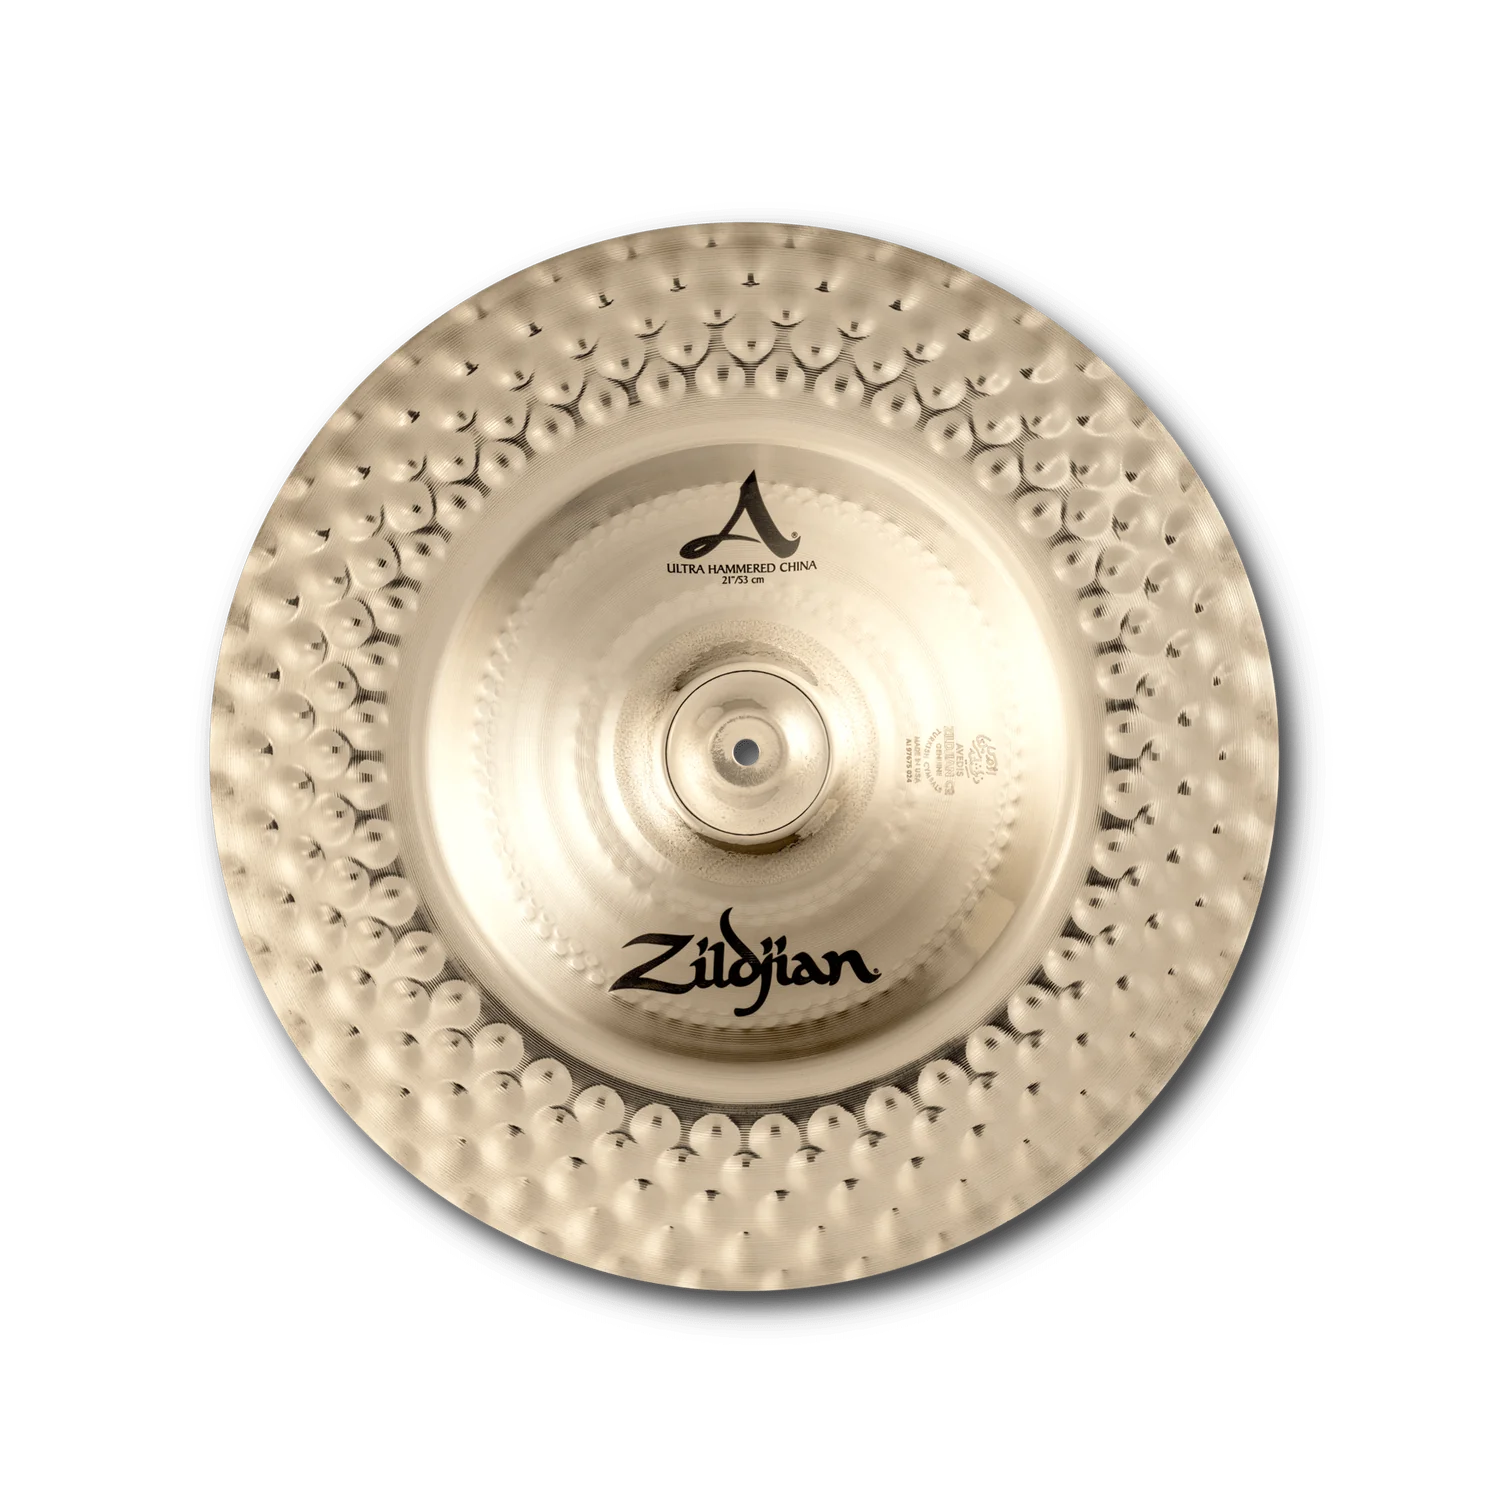 Zildjian A0369 19" A Ultra Hammered China